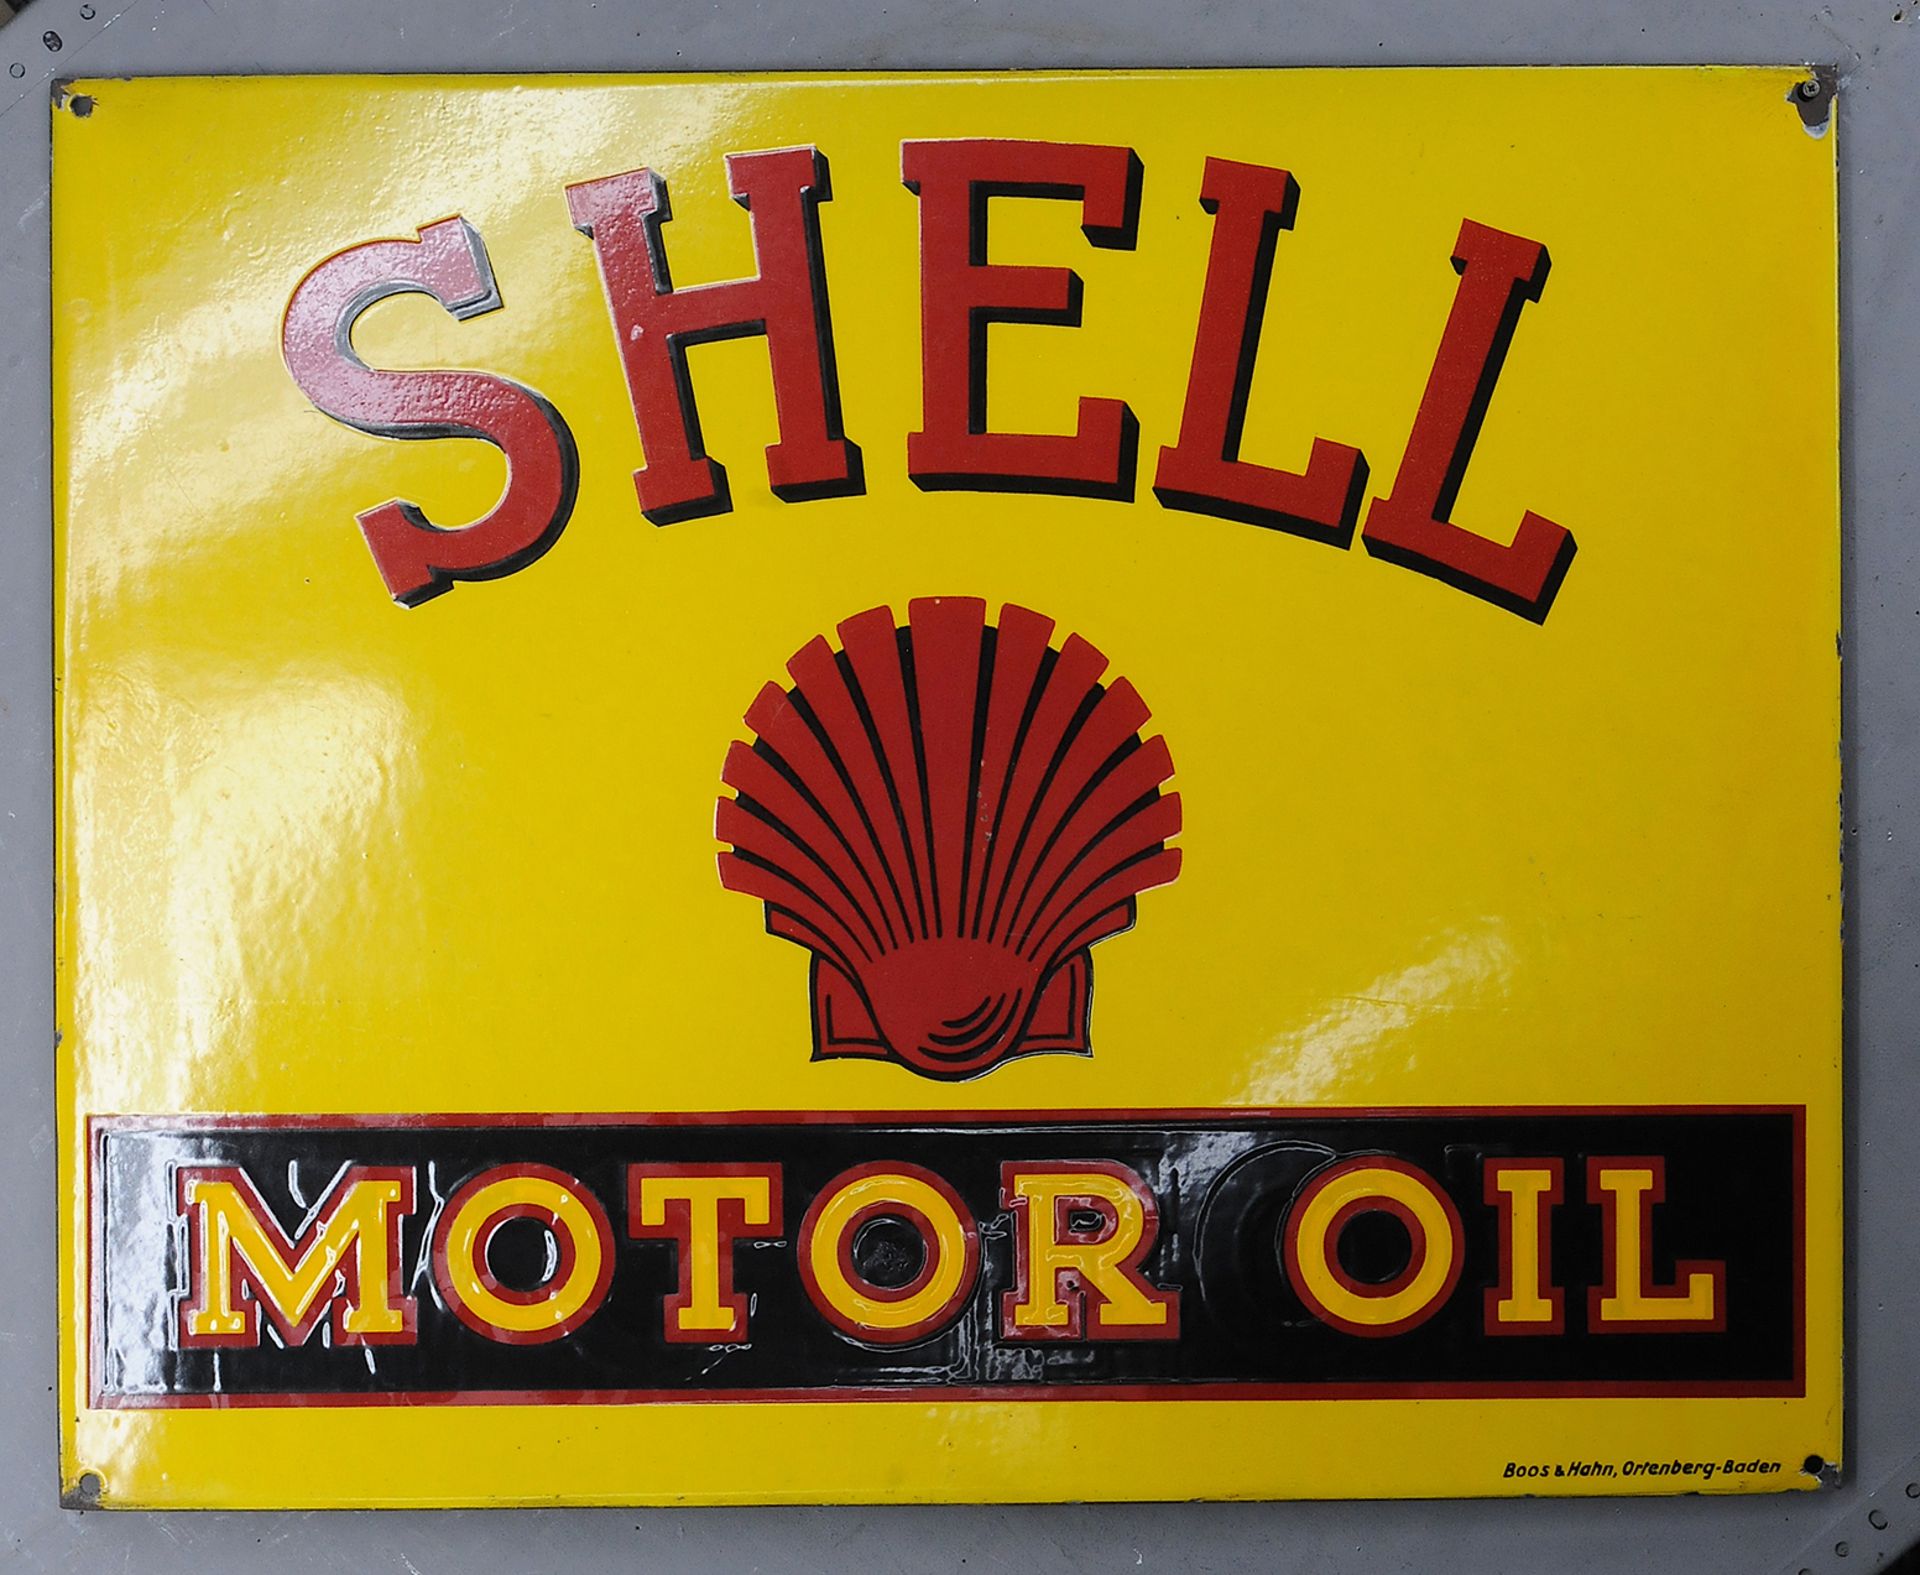 Shell Motor Oil - Image 3 of 3